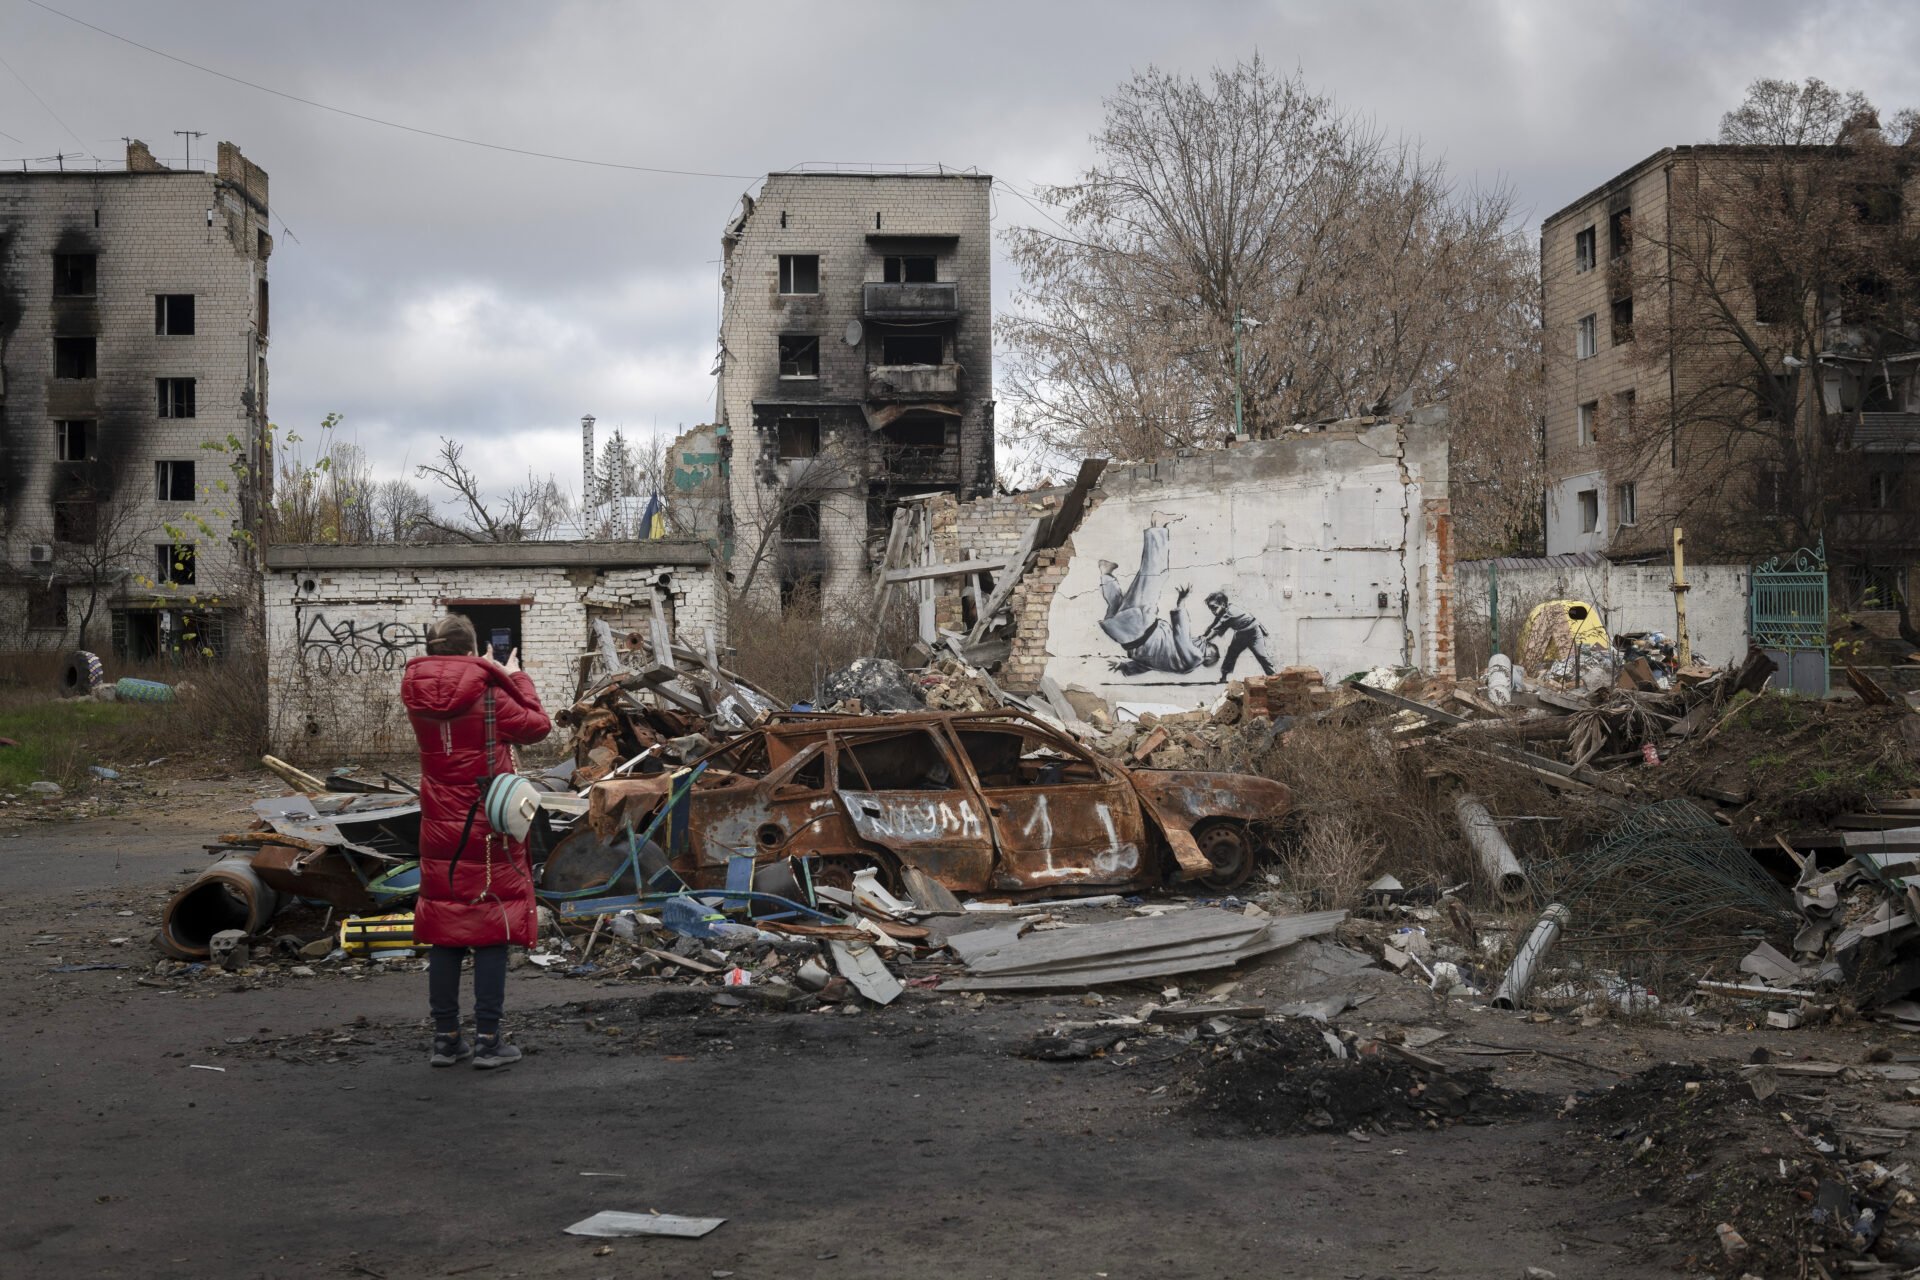 PREHĽAD UDALOSTÍ (14. 11.): Rusko spáchalo v Chersonskej oblasti vyše 400 vojnových zločinov, tvrdí Zelenský